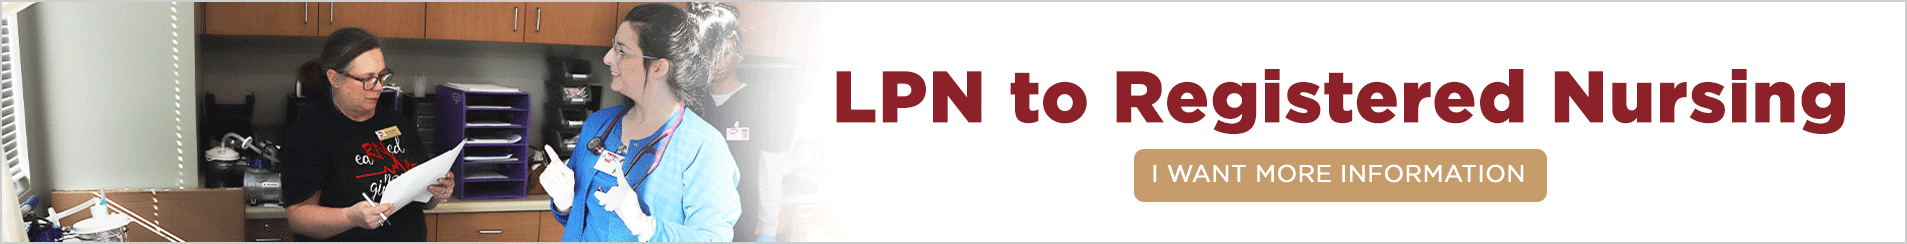 LPN to Registered Nursing